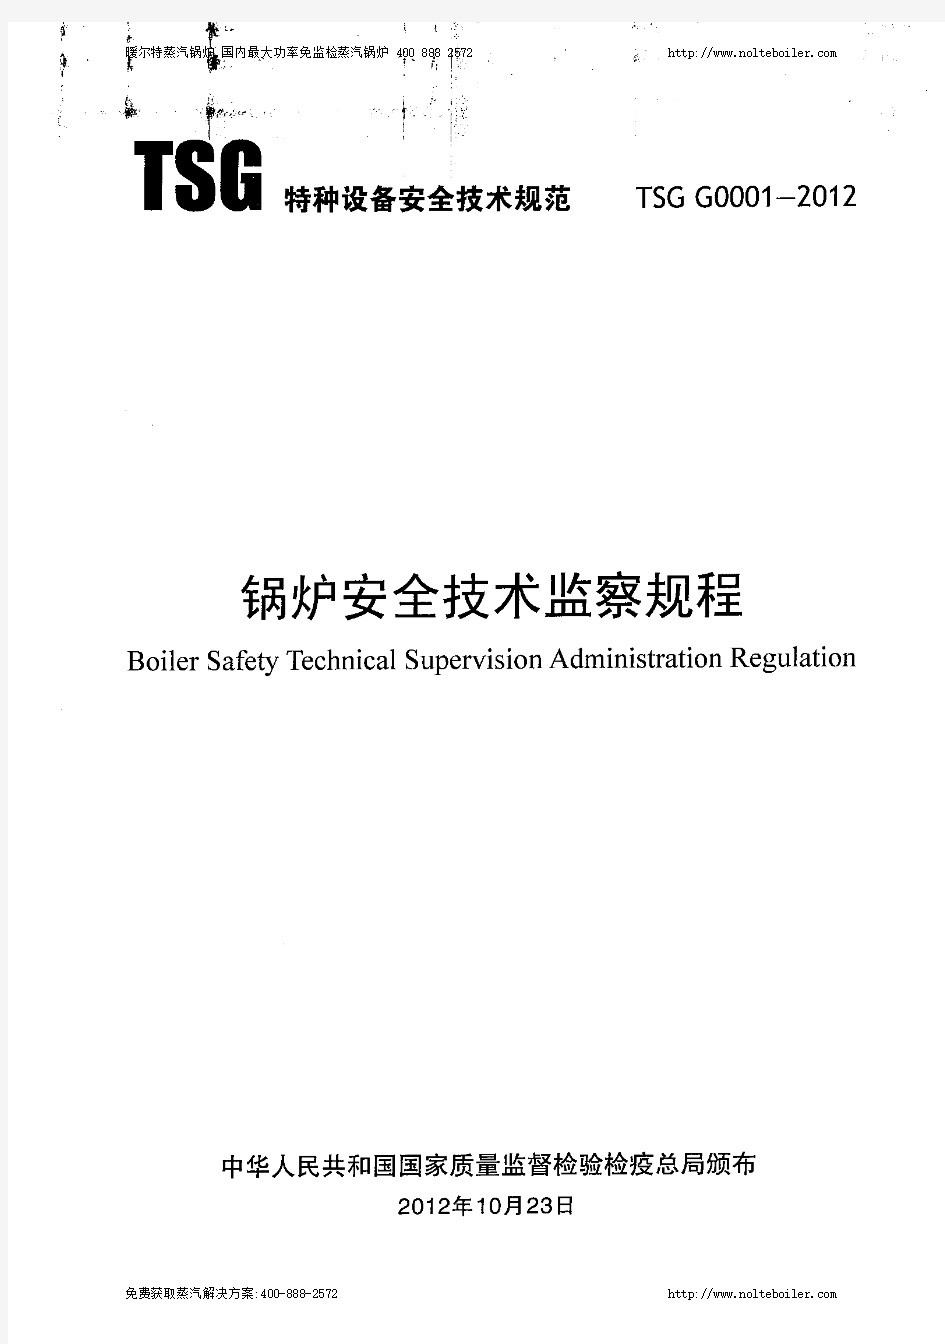 TSGG0001-2012锅炉安全技术监察规程